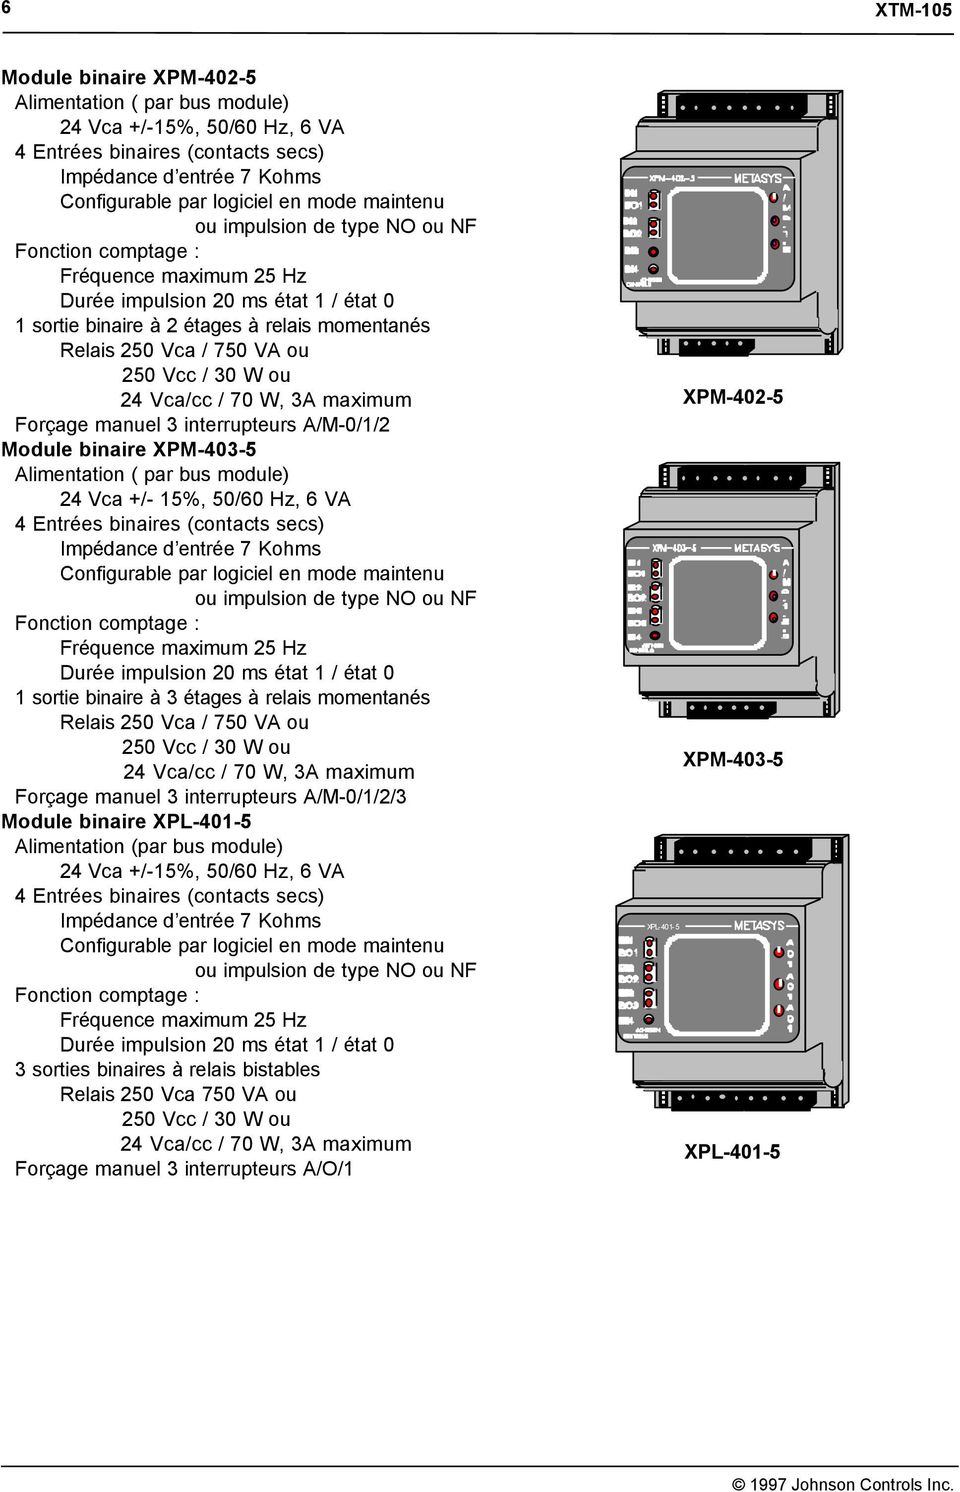 Forçage manuel 3 interrupteurs A/M-0/1/2/3 Module binaire XPL-401-5 Alimentation (par bus module) 3 sorties binaires